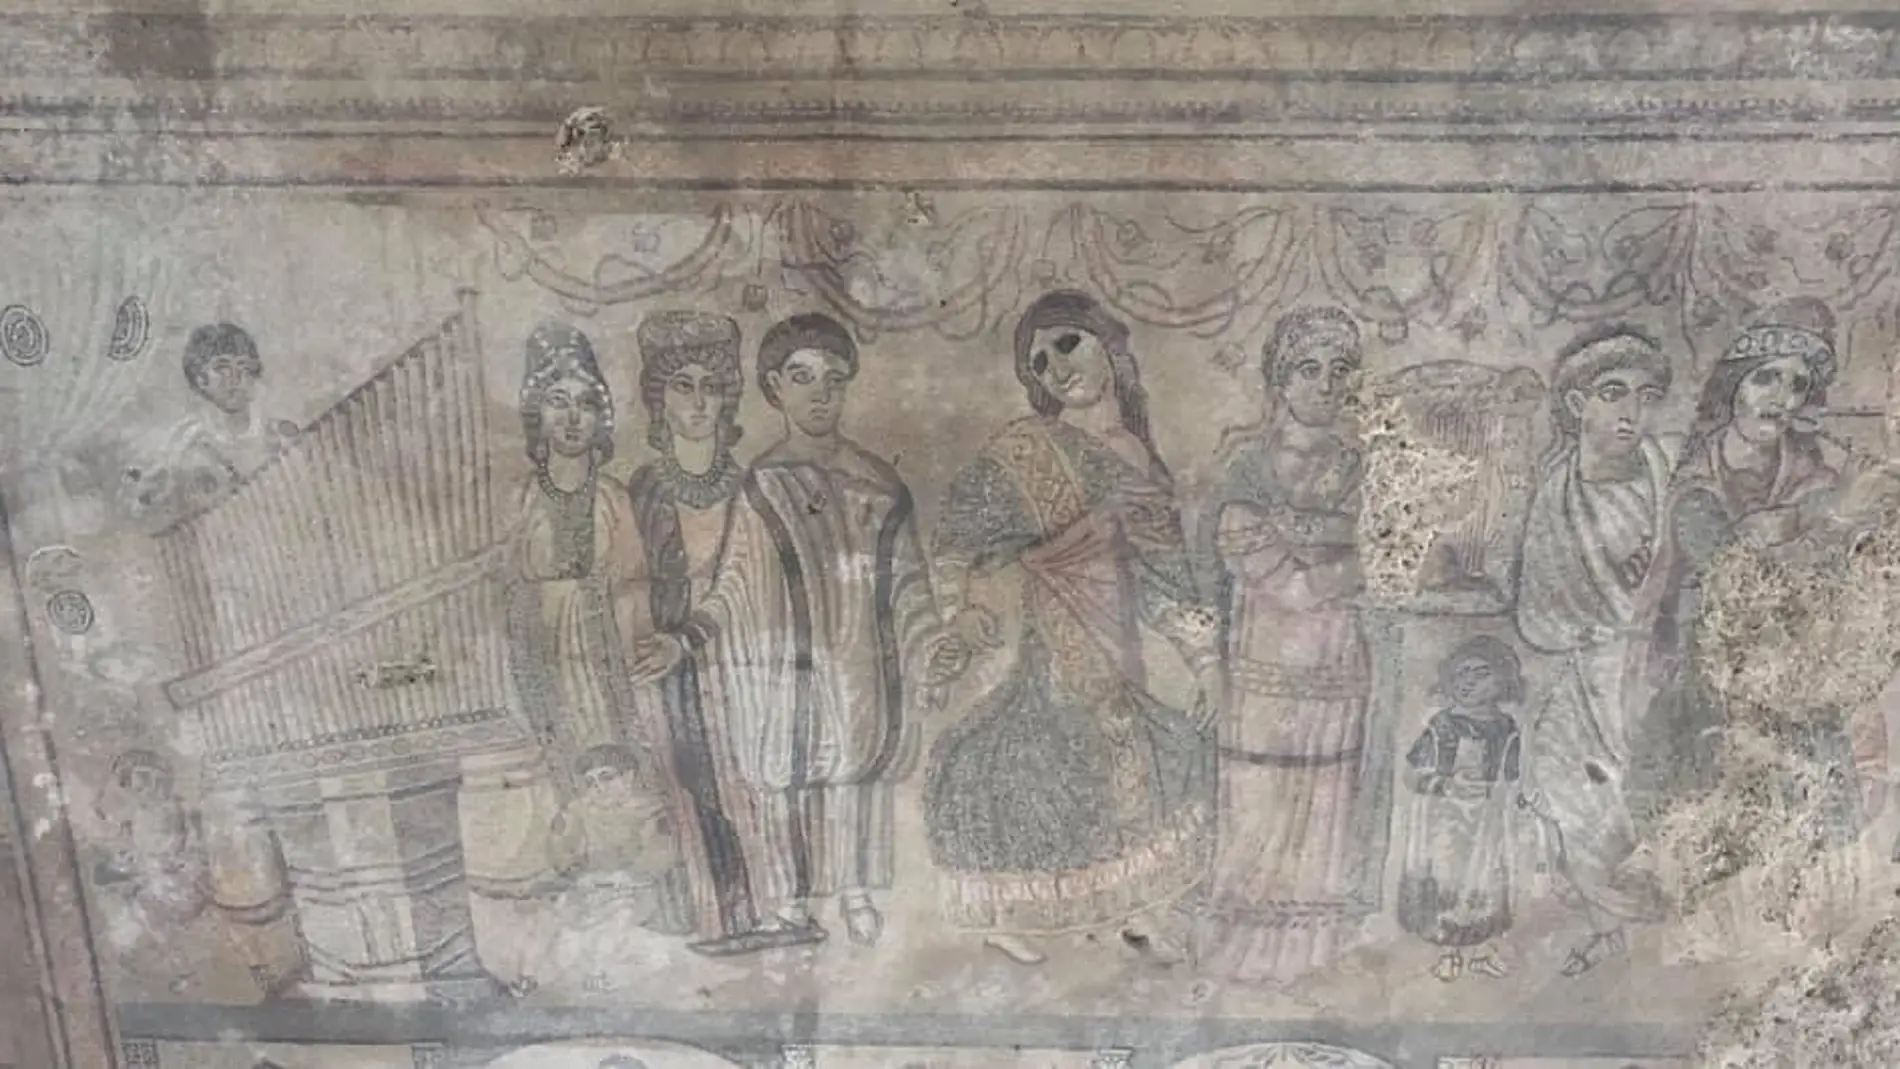 El mosaico figurativo de Noheda es el más importante del Arco Mediterráneo